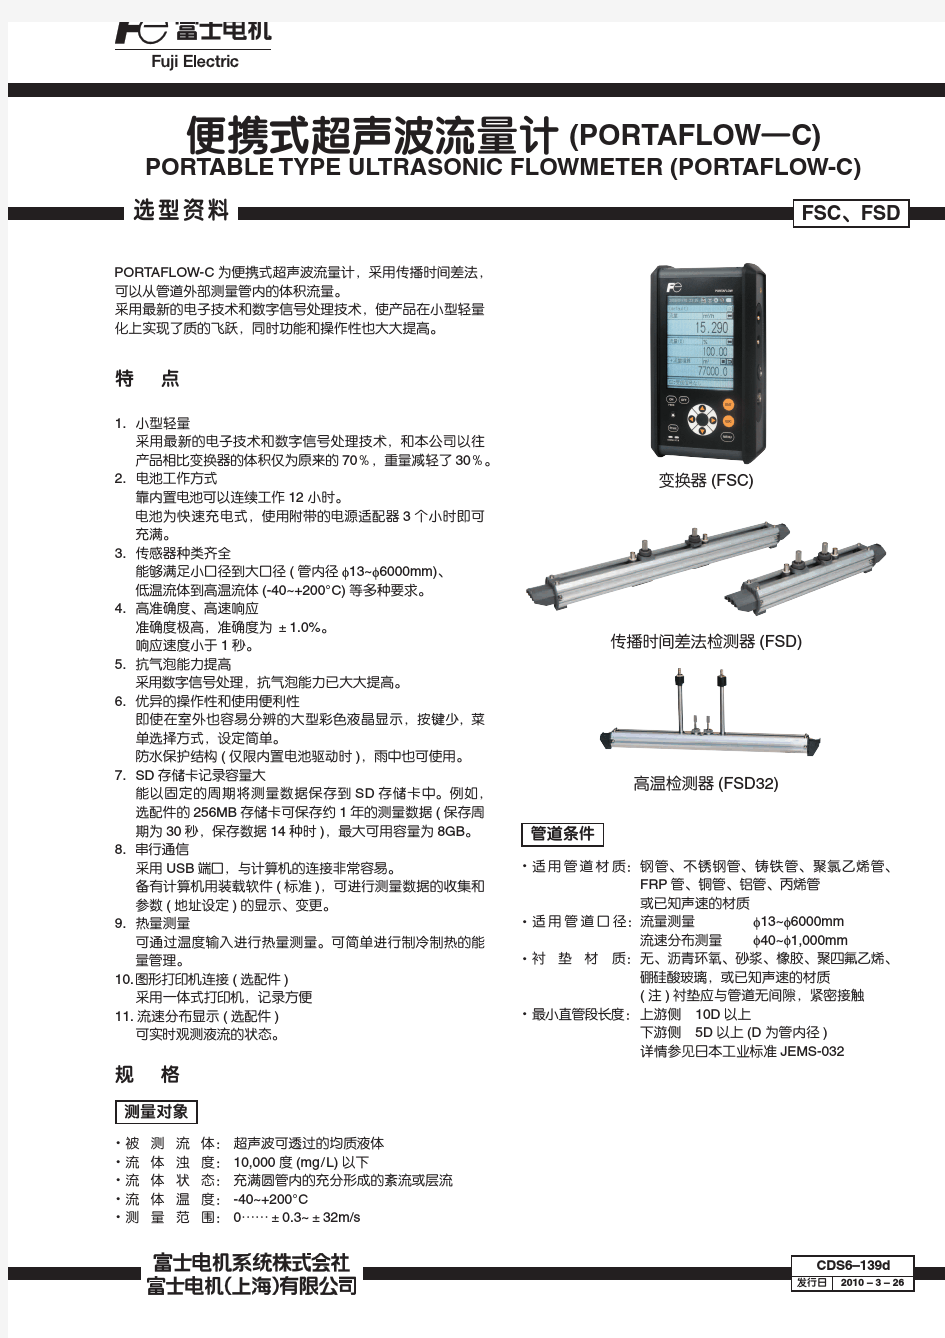 FSC便携式超声波流量计中文规格书